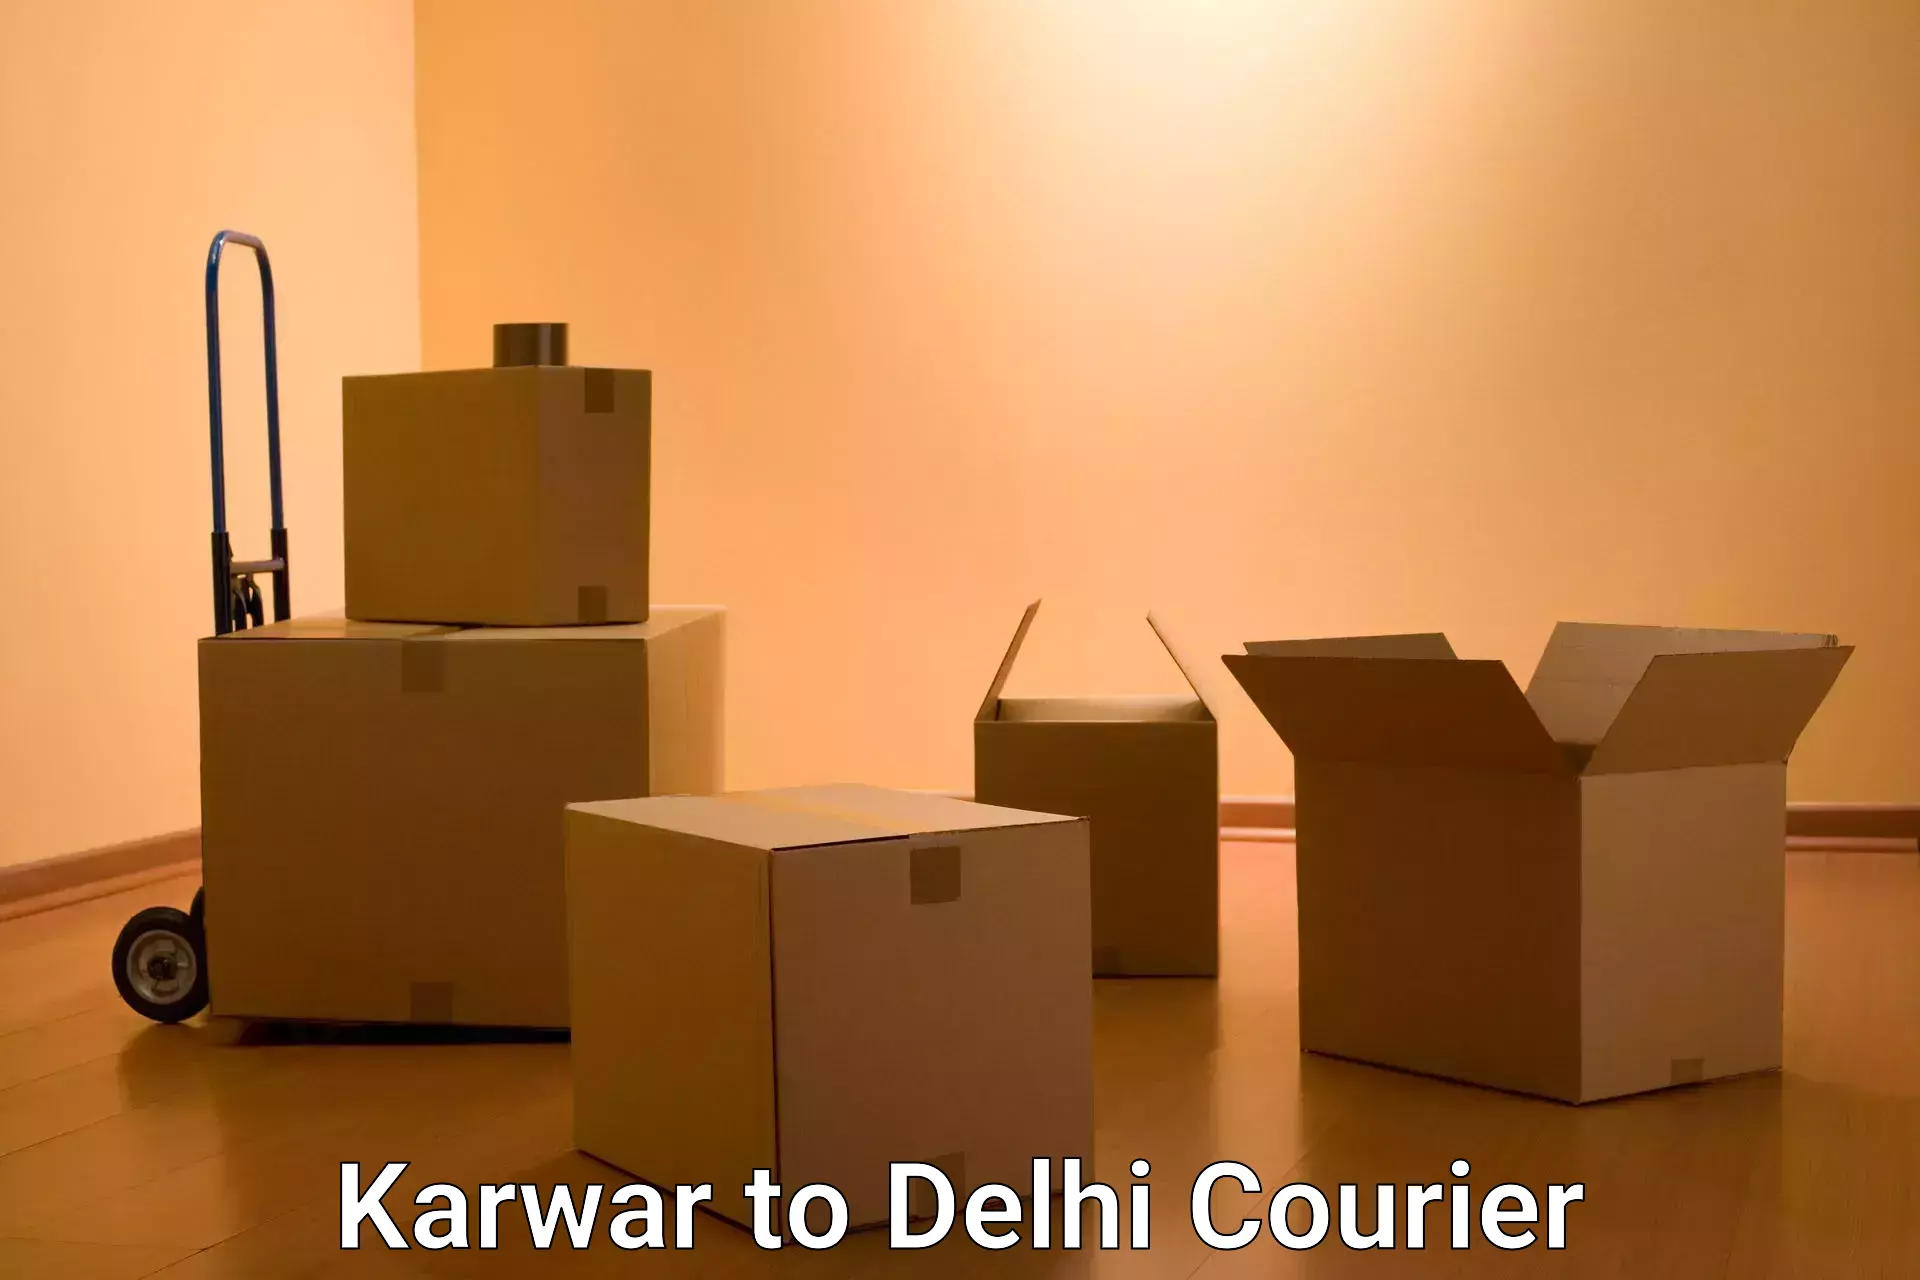 Urban courier service Karwar to NIT Delhi